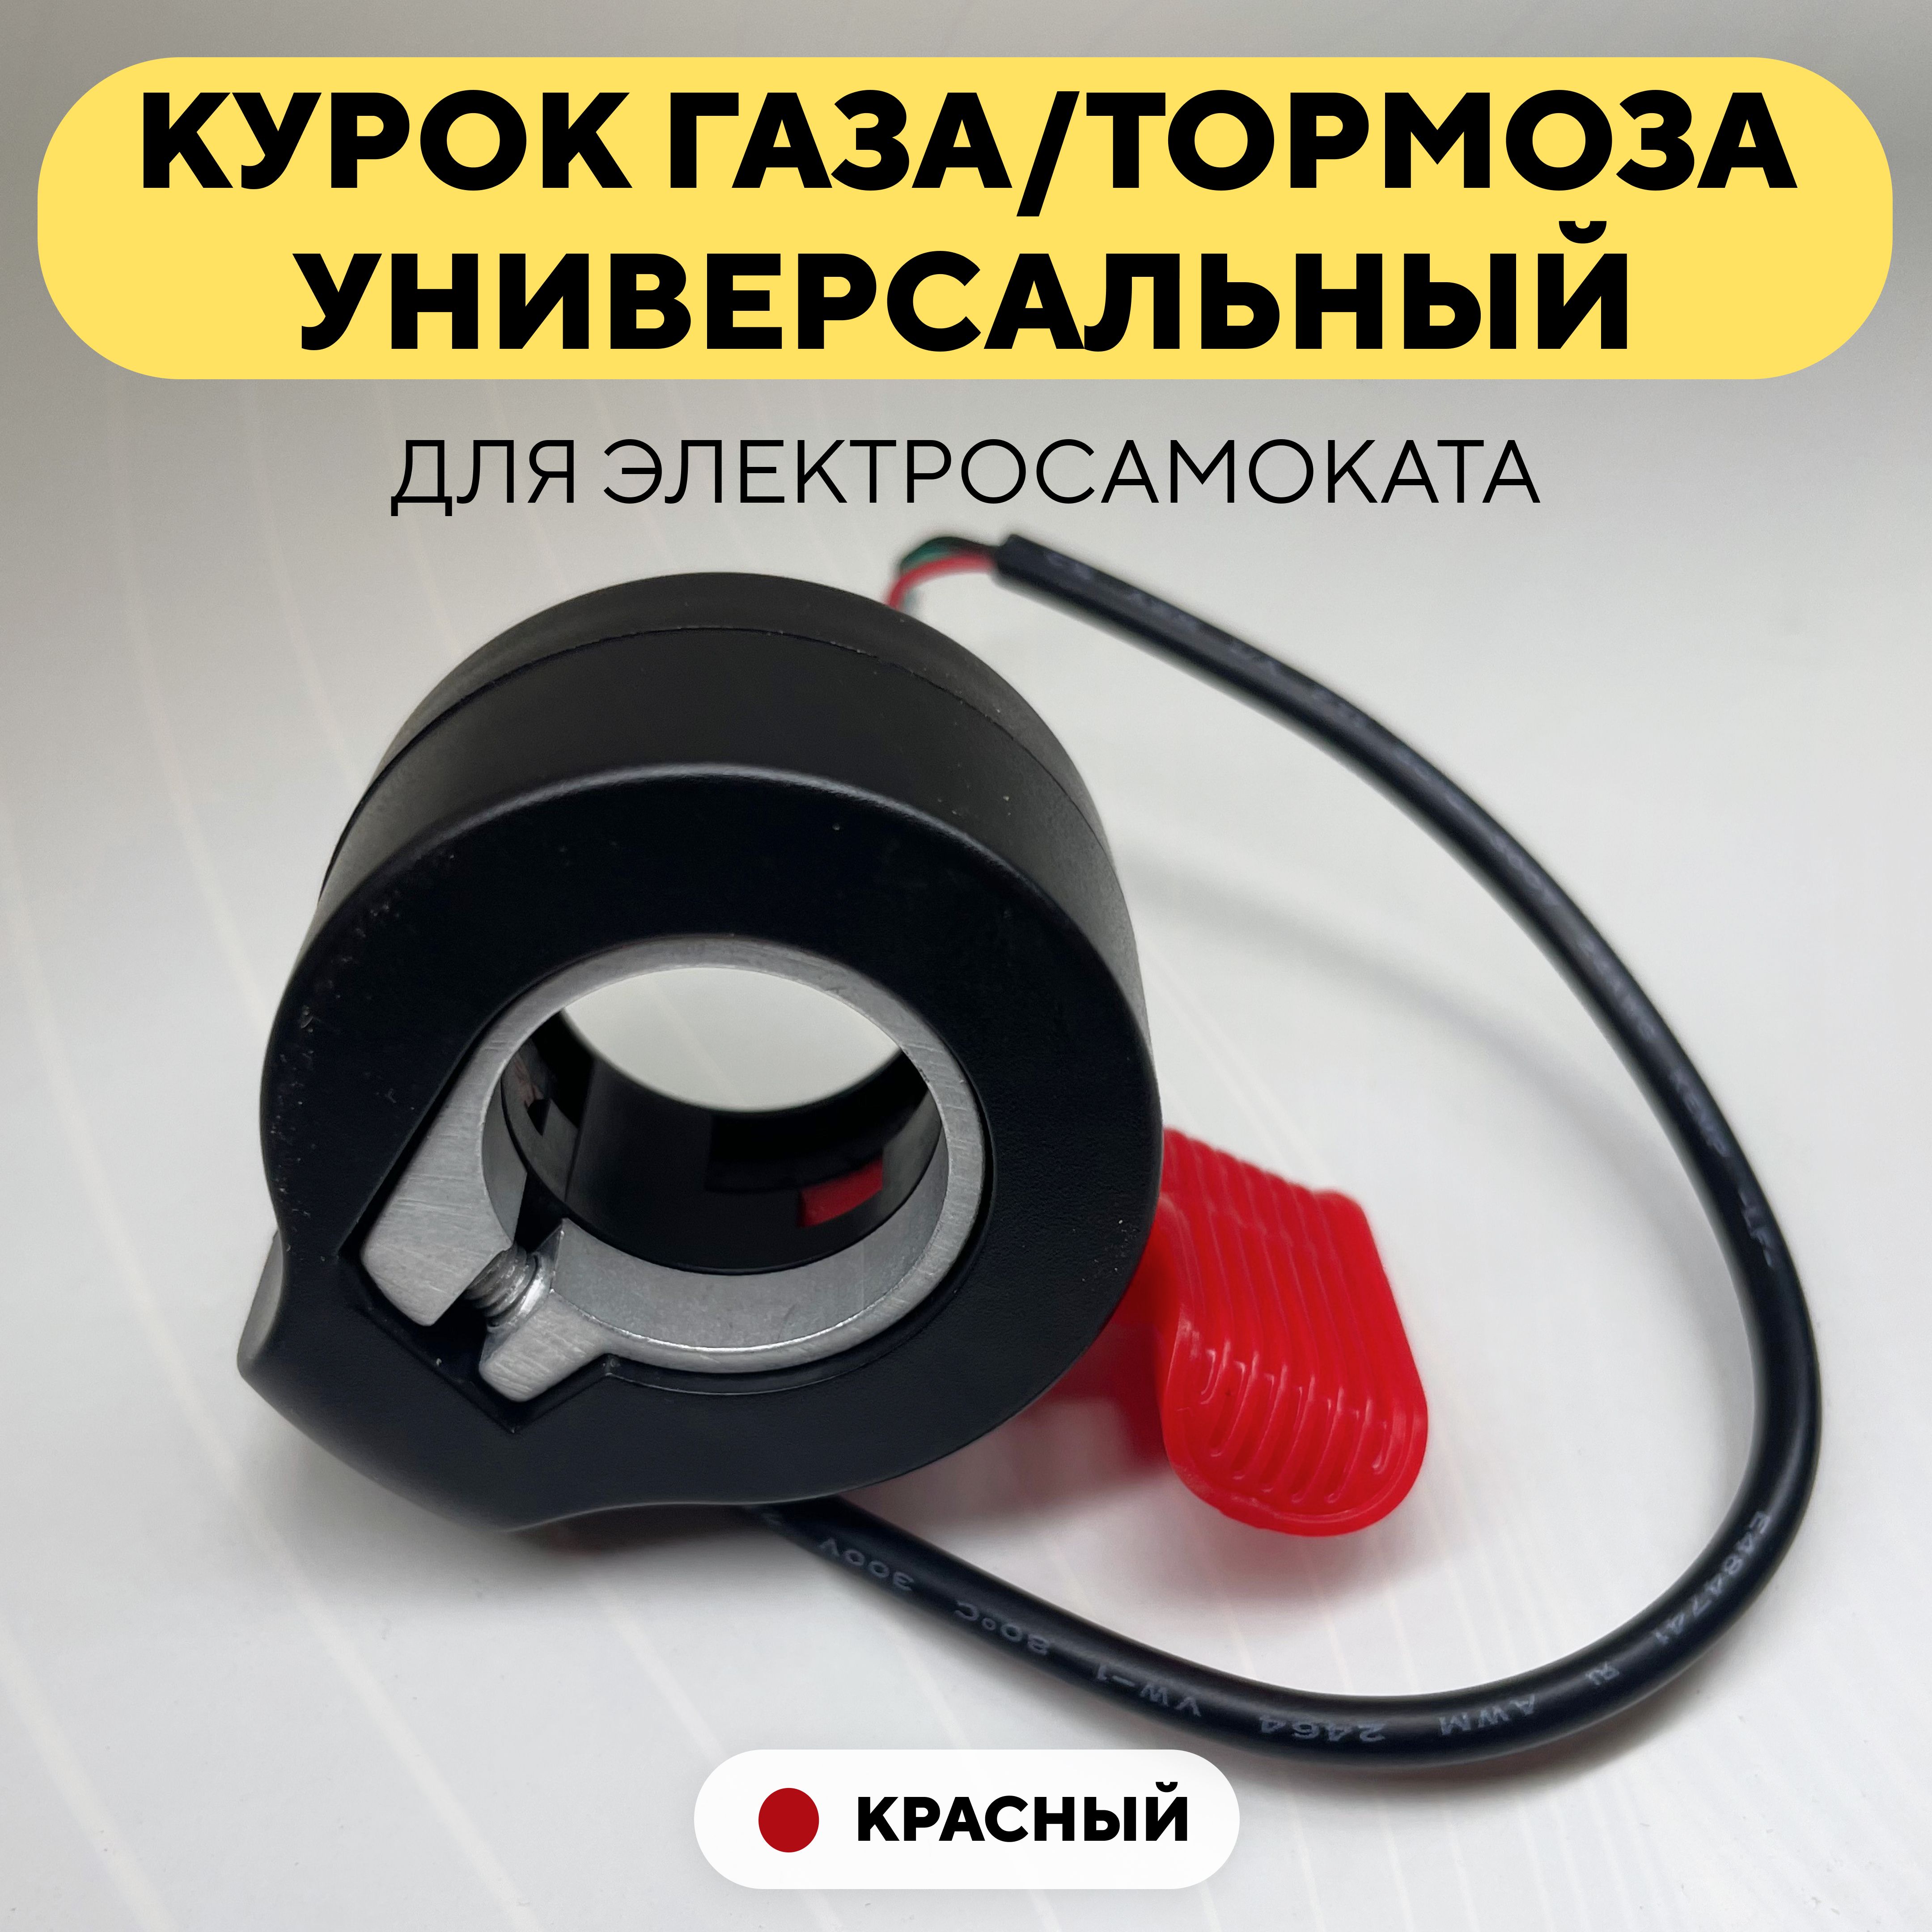 Курокгаза/тормозадляэлектросамоката,электровелосипедауниверсальный(красный)